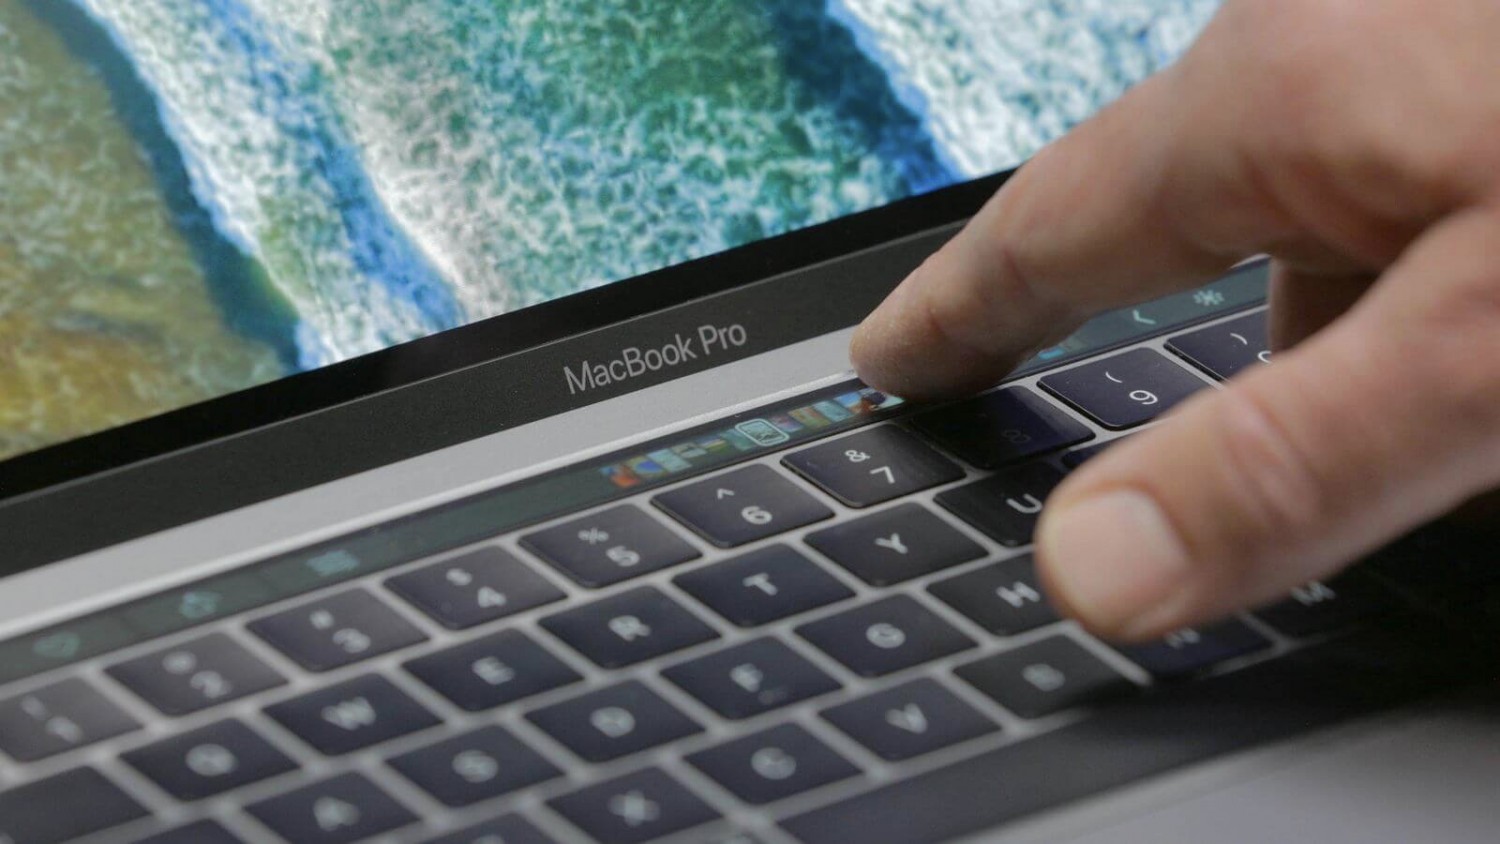 Будущие модели MacBook получат наэкранную клавиатуру, которая ощущается как физическая